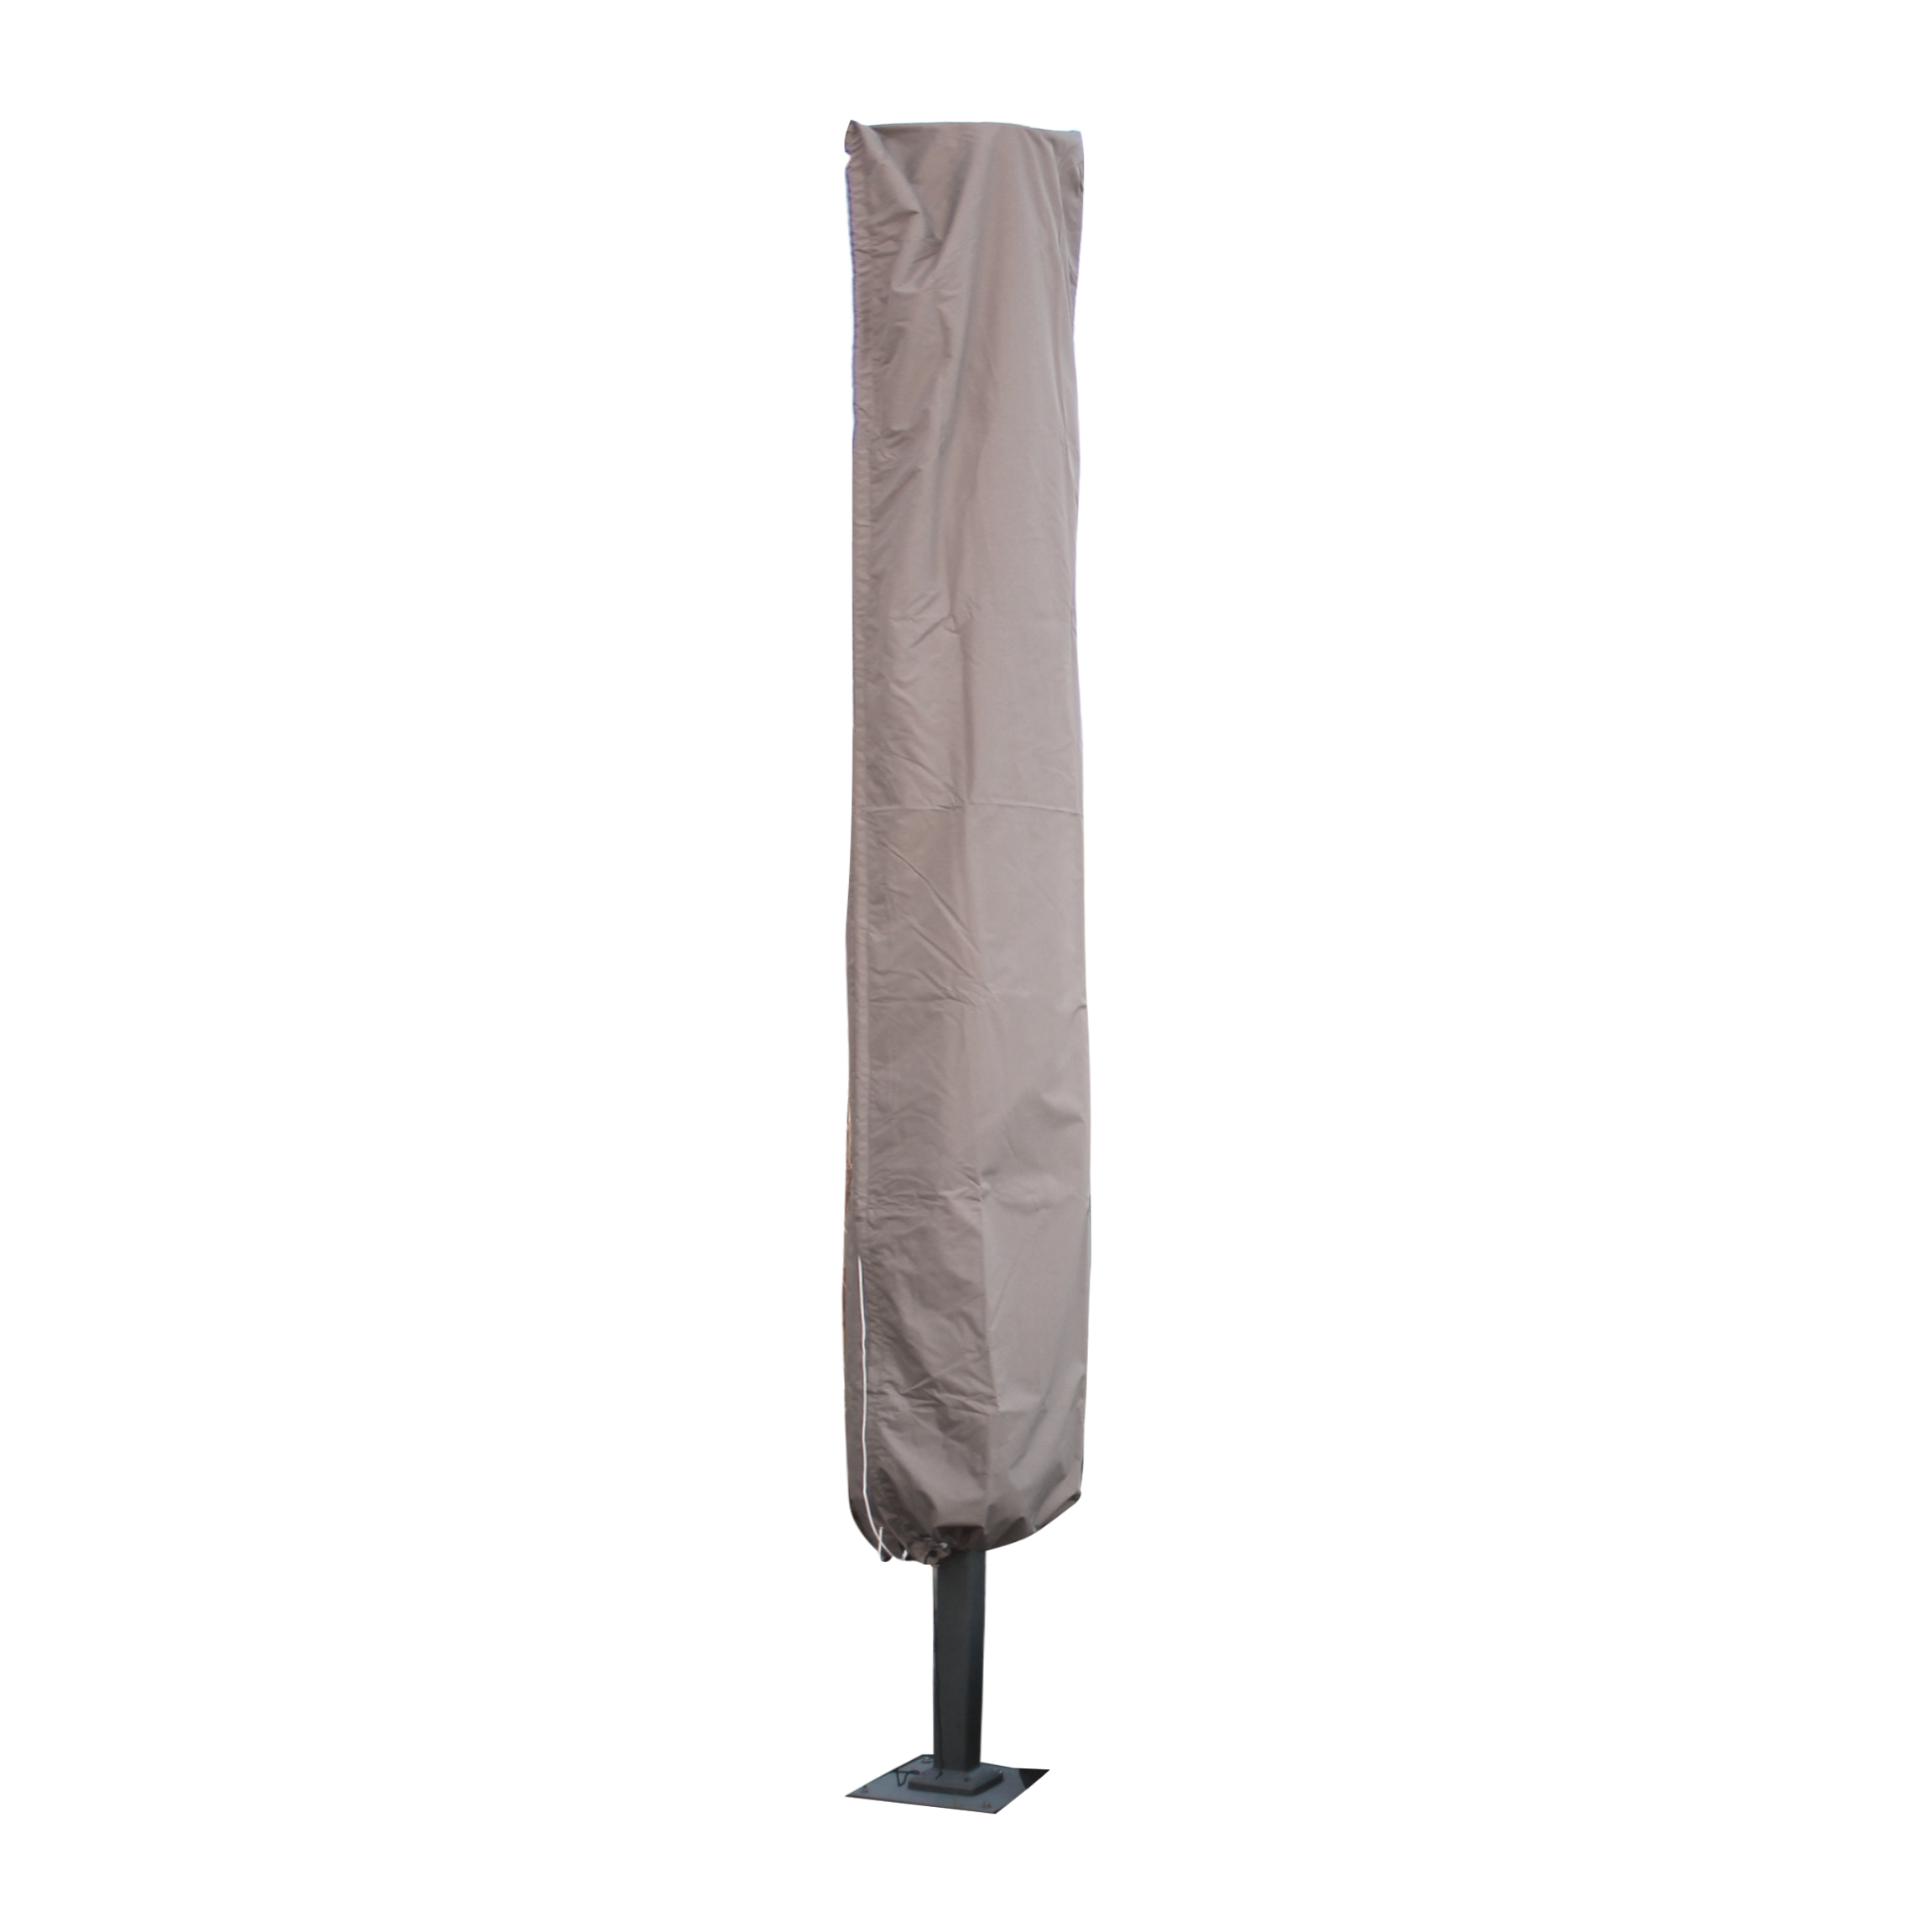 Beschermhoes voor parasol H: 390 cm